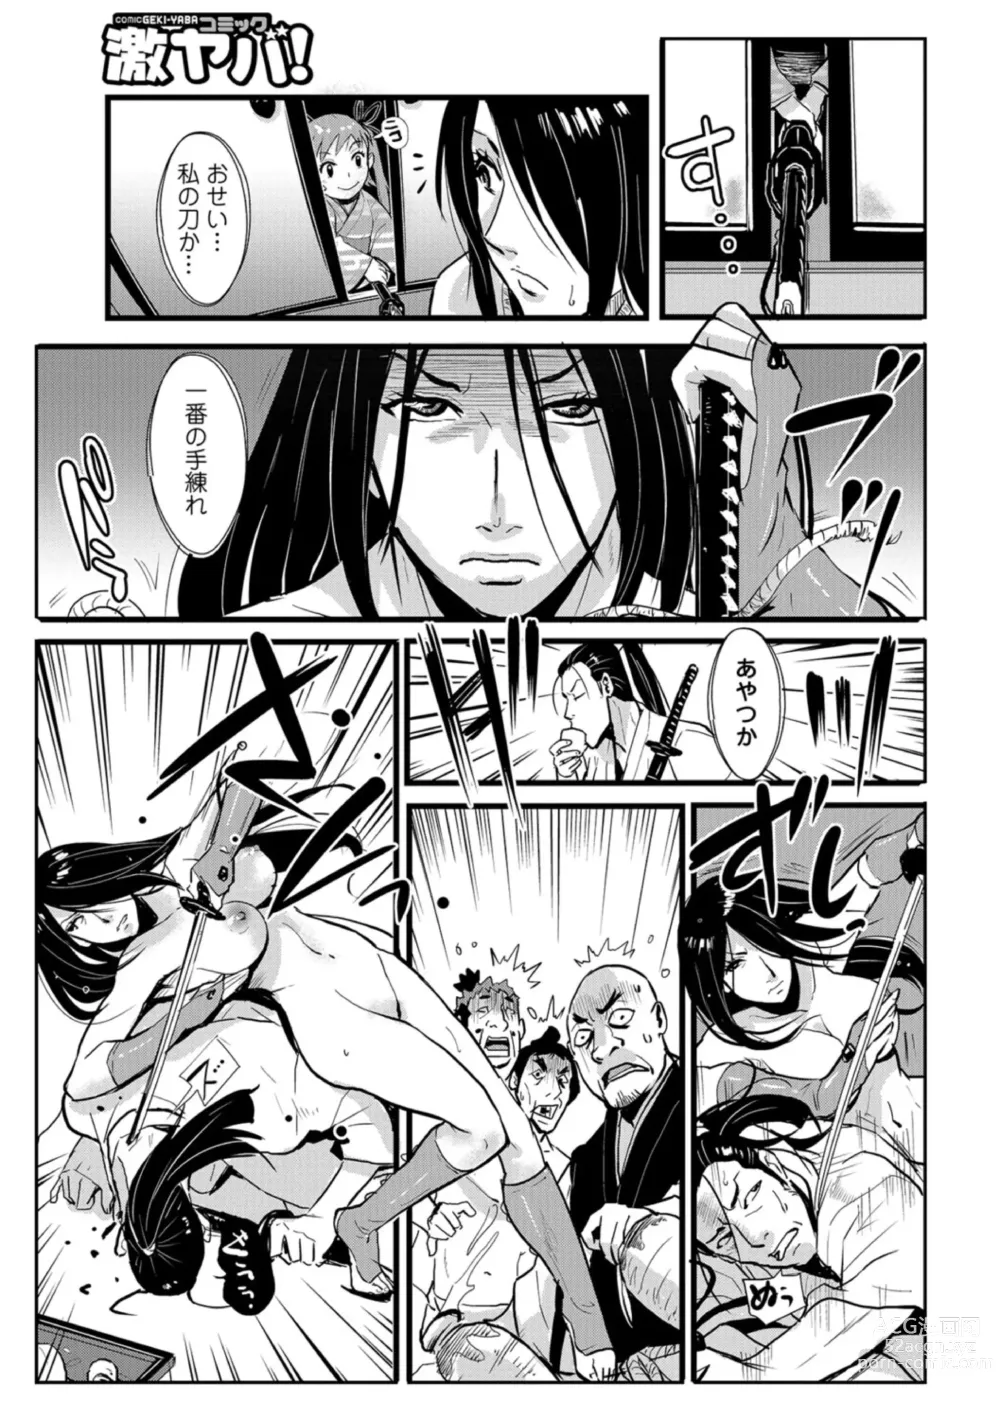 Page 17 of manga Harami samurai 04 ~Yarare Onna to Ame no Yoru~